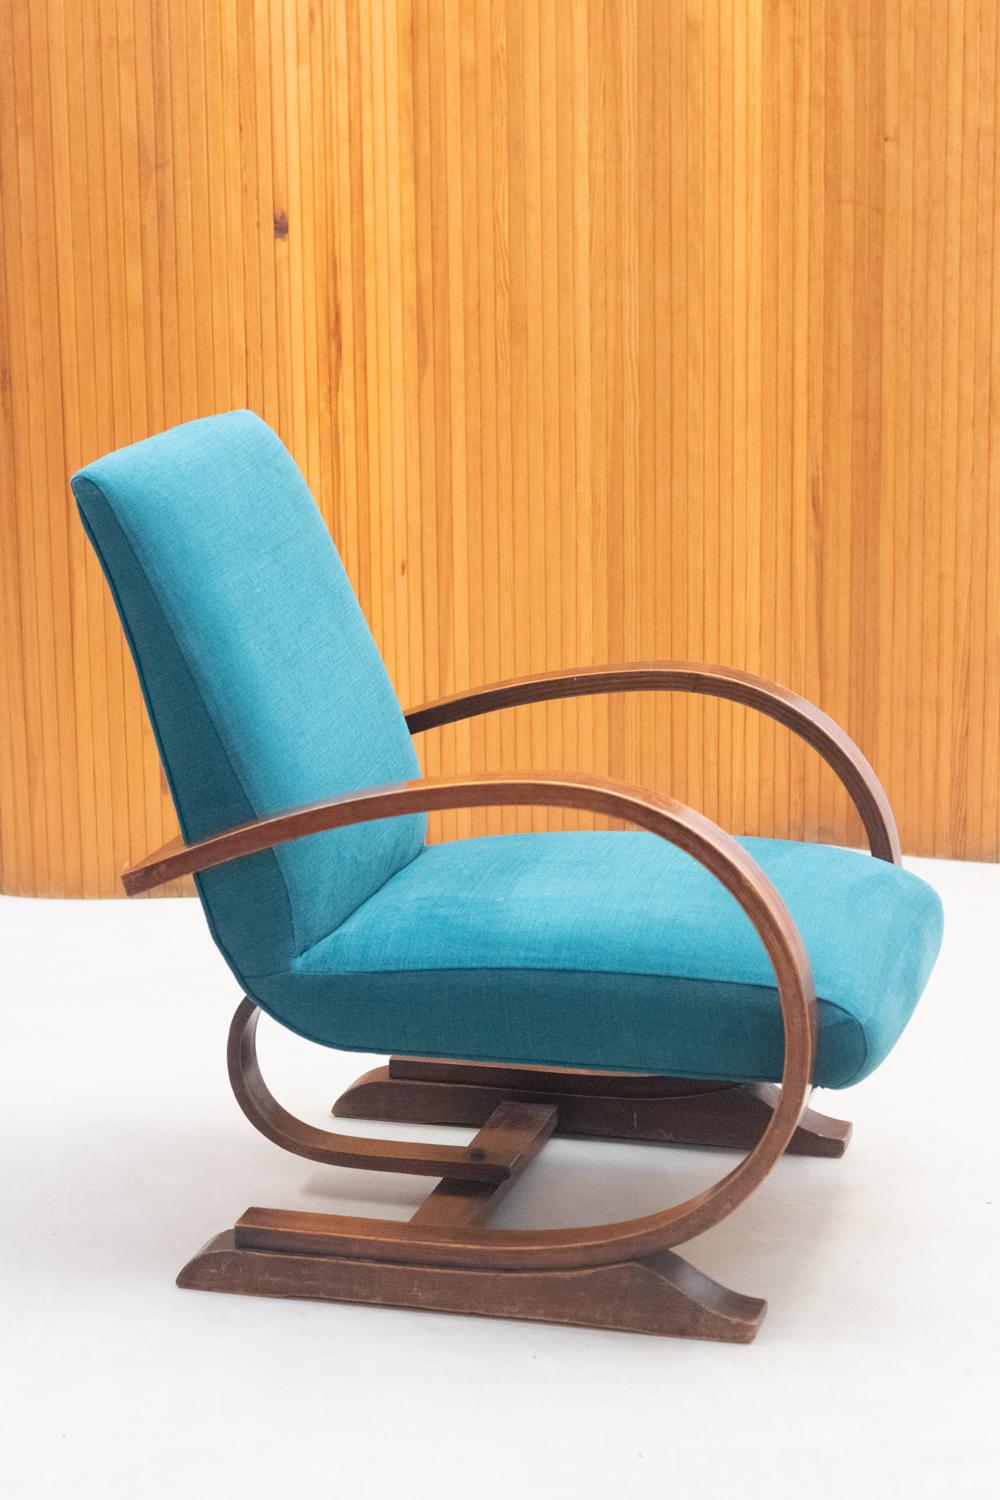 Sessel im Art-déco-Stil aus Frankreich der 1960er Jahre, mit neuem blauem Samtstoff.

Toller Zustand.

Zögern Sie nicht, uns für weitere Informationen zu kontaktieren. Wir würden uns sehr freuen, Ihnen in jeder Hinsicht behilflich sein zu können.
